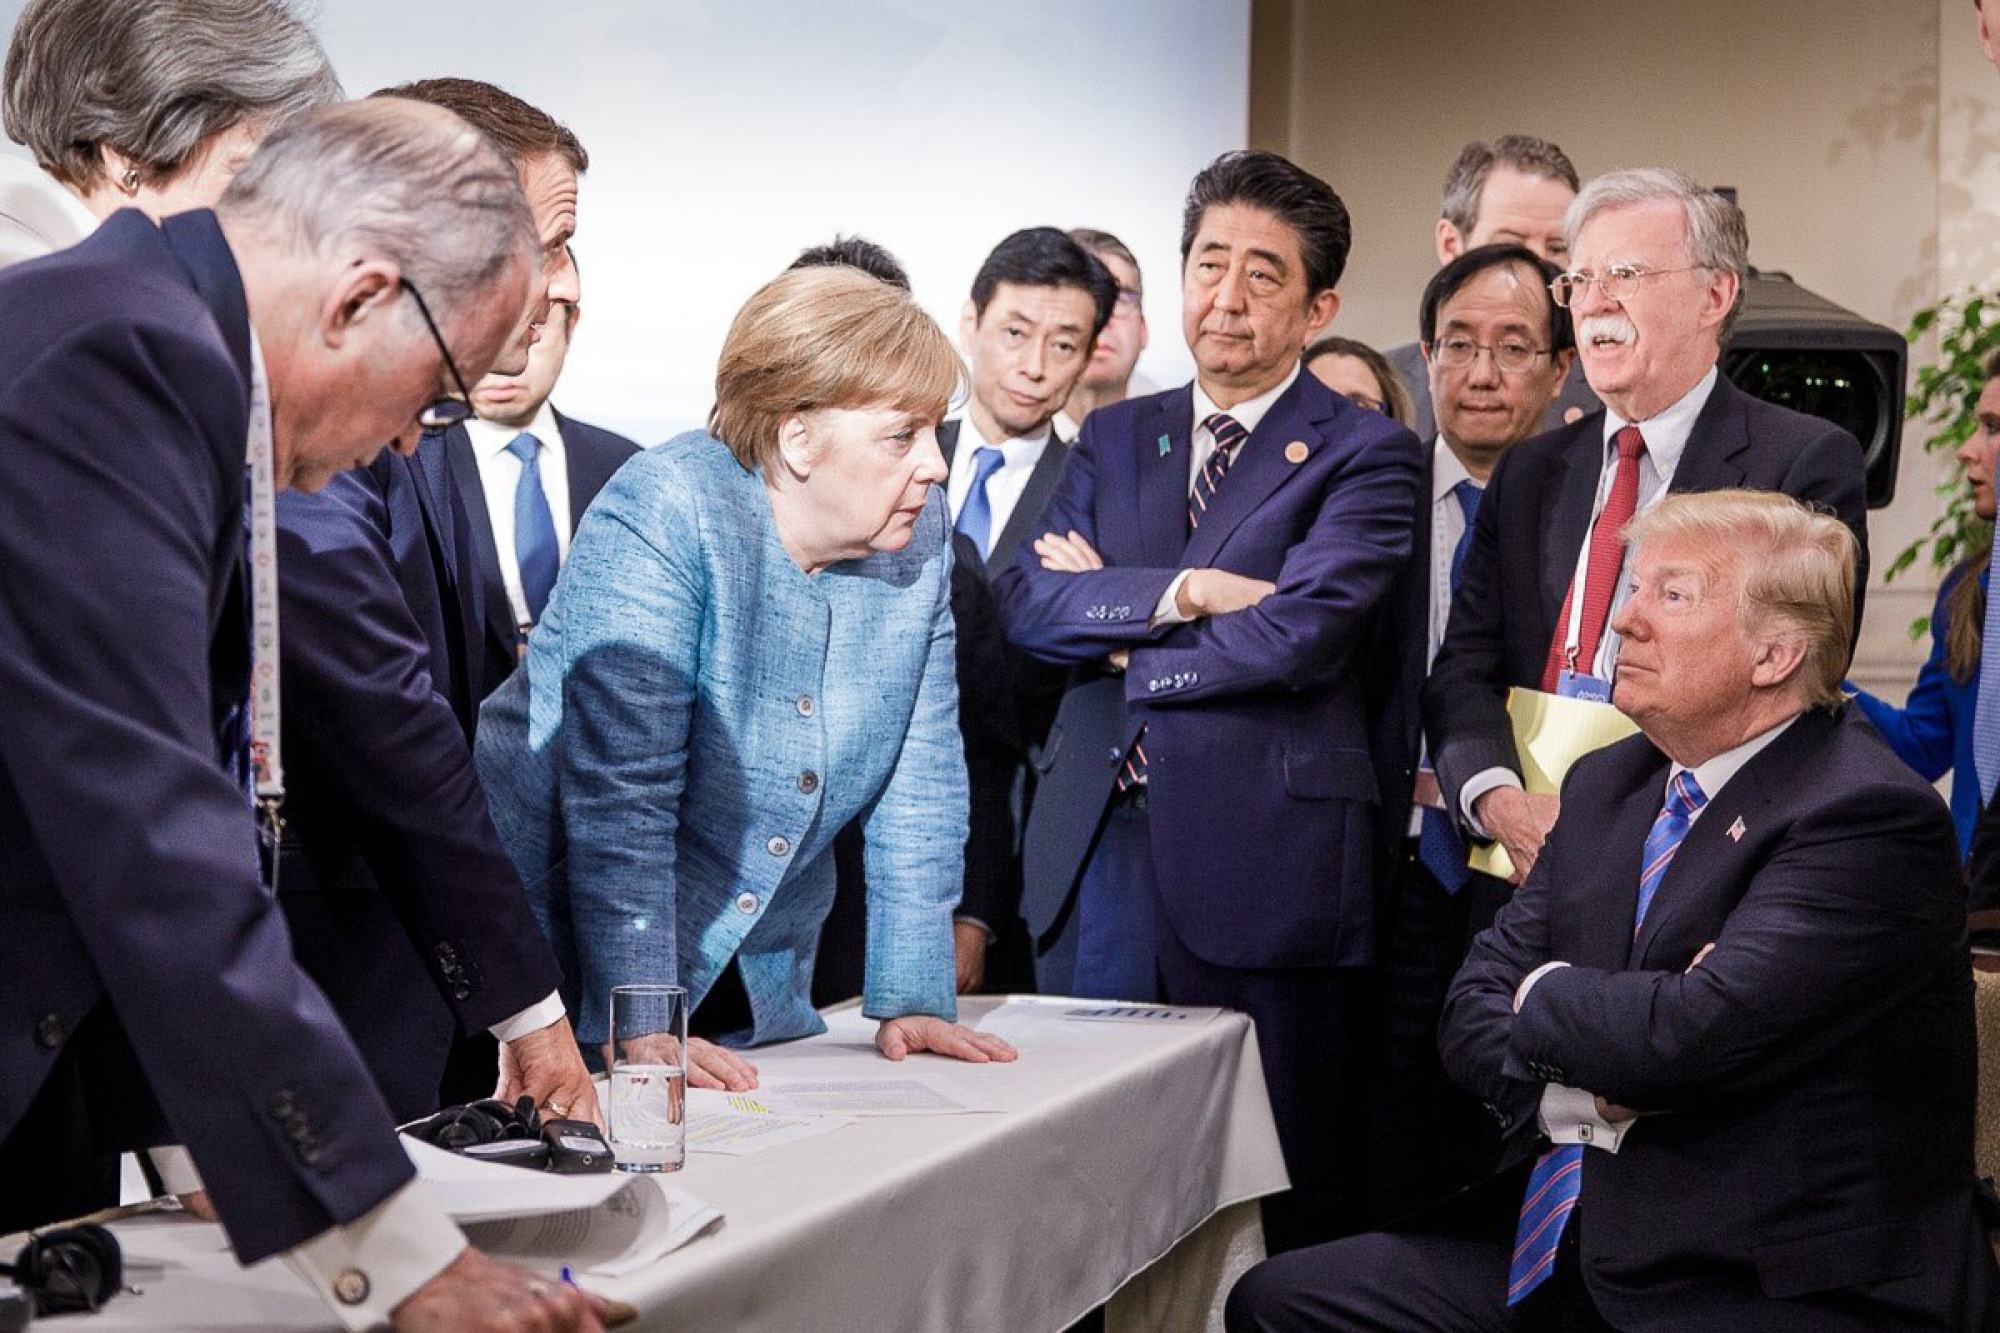 Bức ảnh chụp bà Merkel cùng nhà lãnh đạo G7 khác trong cuộc họp của Hội nghị thượng đỉnh G7 ở Canada, vào năm 2018, đã lan truyền nhanh chóng vì biểu hiện quyết đoán của bà khi đối đầu với Tổng thống Mỹ Donald Trump. Trong dịp này, cô mặc một chiếc áo khoác pha vải lanh màu xanh nhạt.